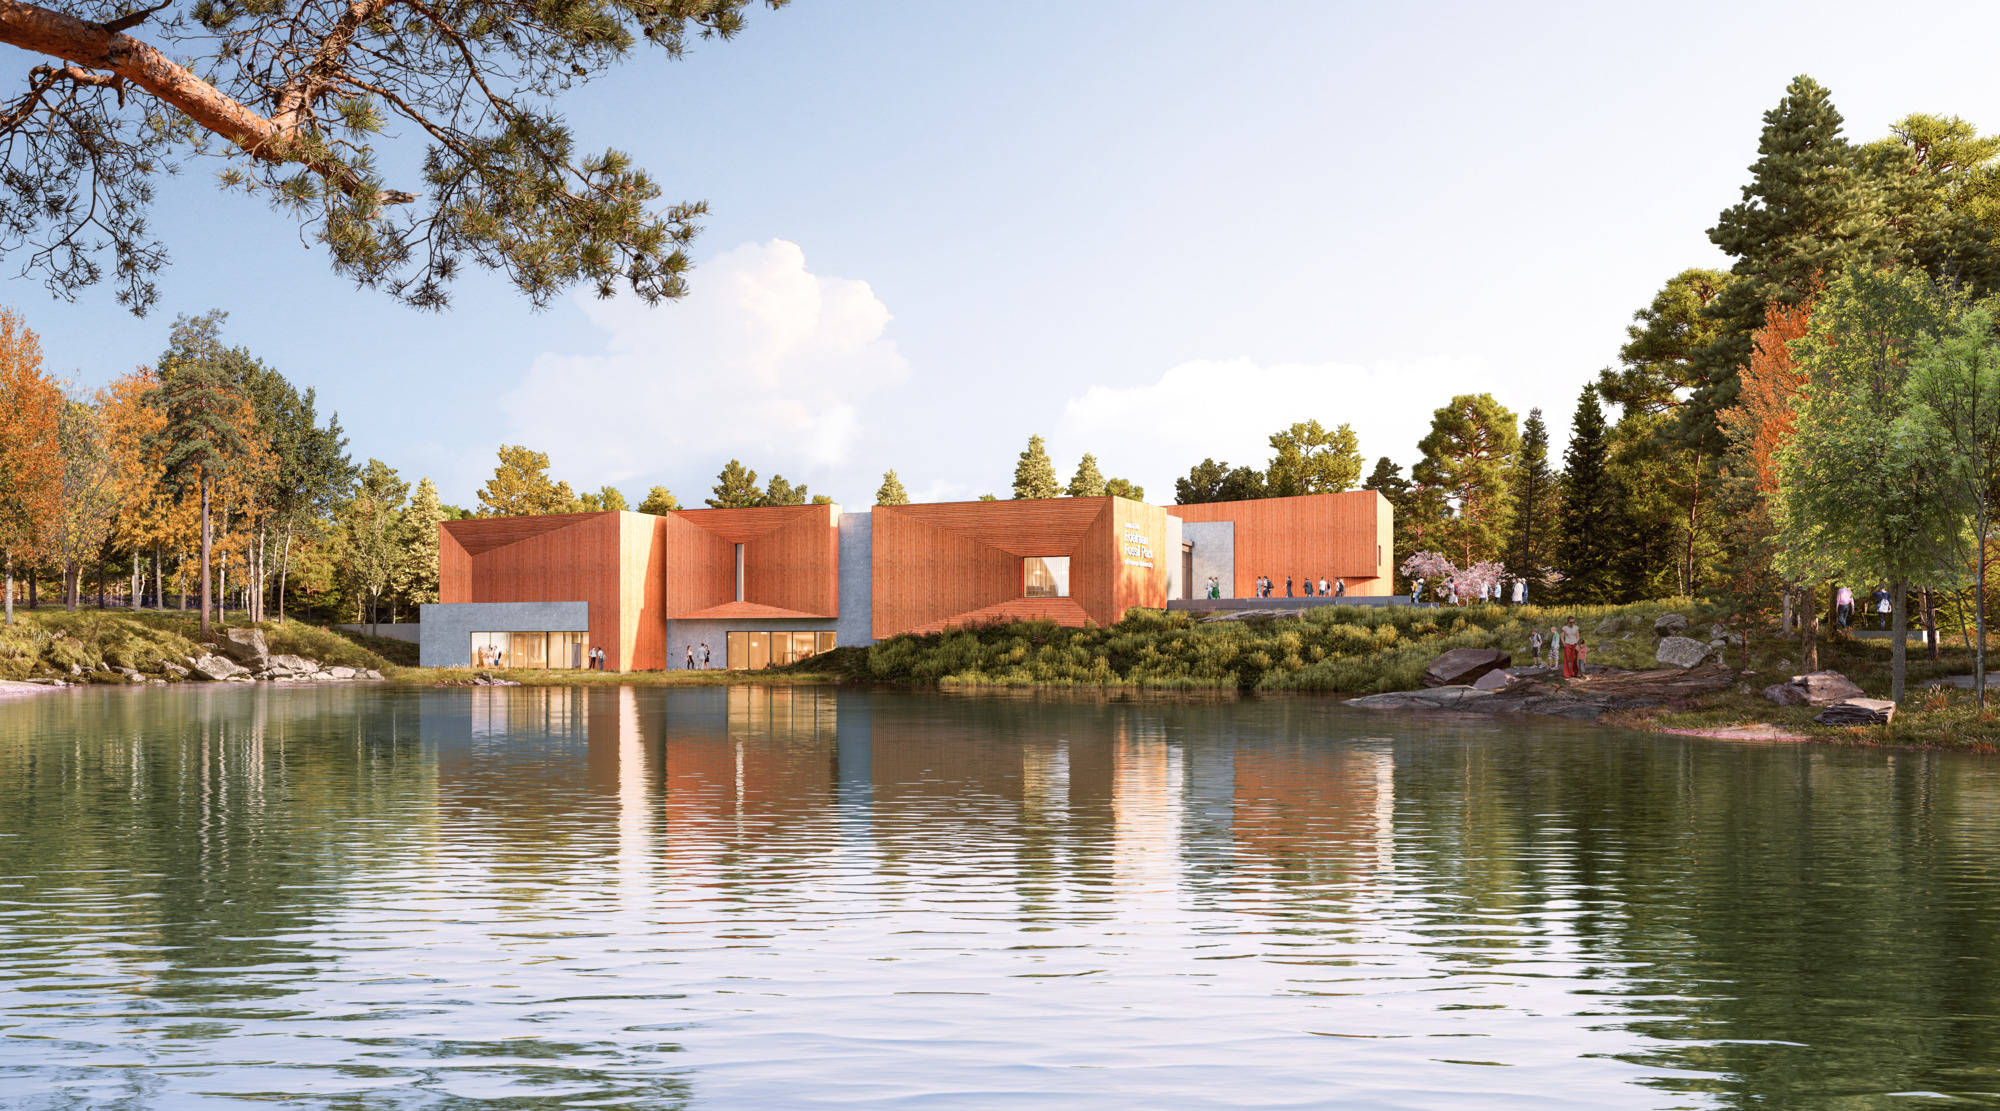 Компании Ennead Architects и KSS Architects представили планы строительства Музея парка окаменелостей Джина и Рика Эдельмана в Университете Роуэн в Нью-Джерси